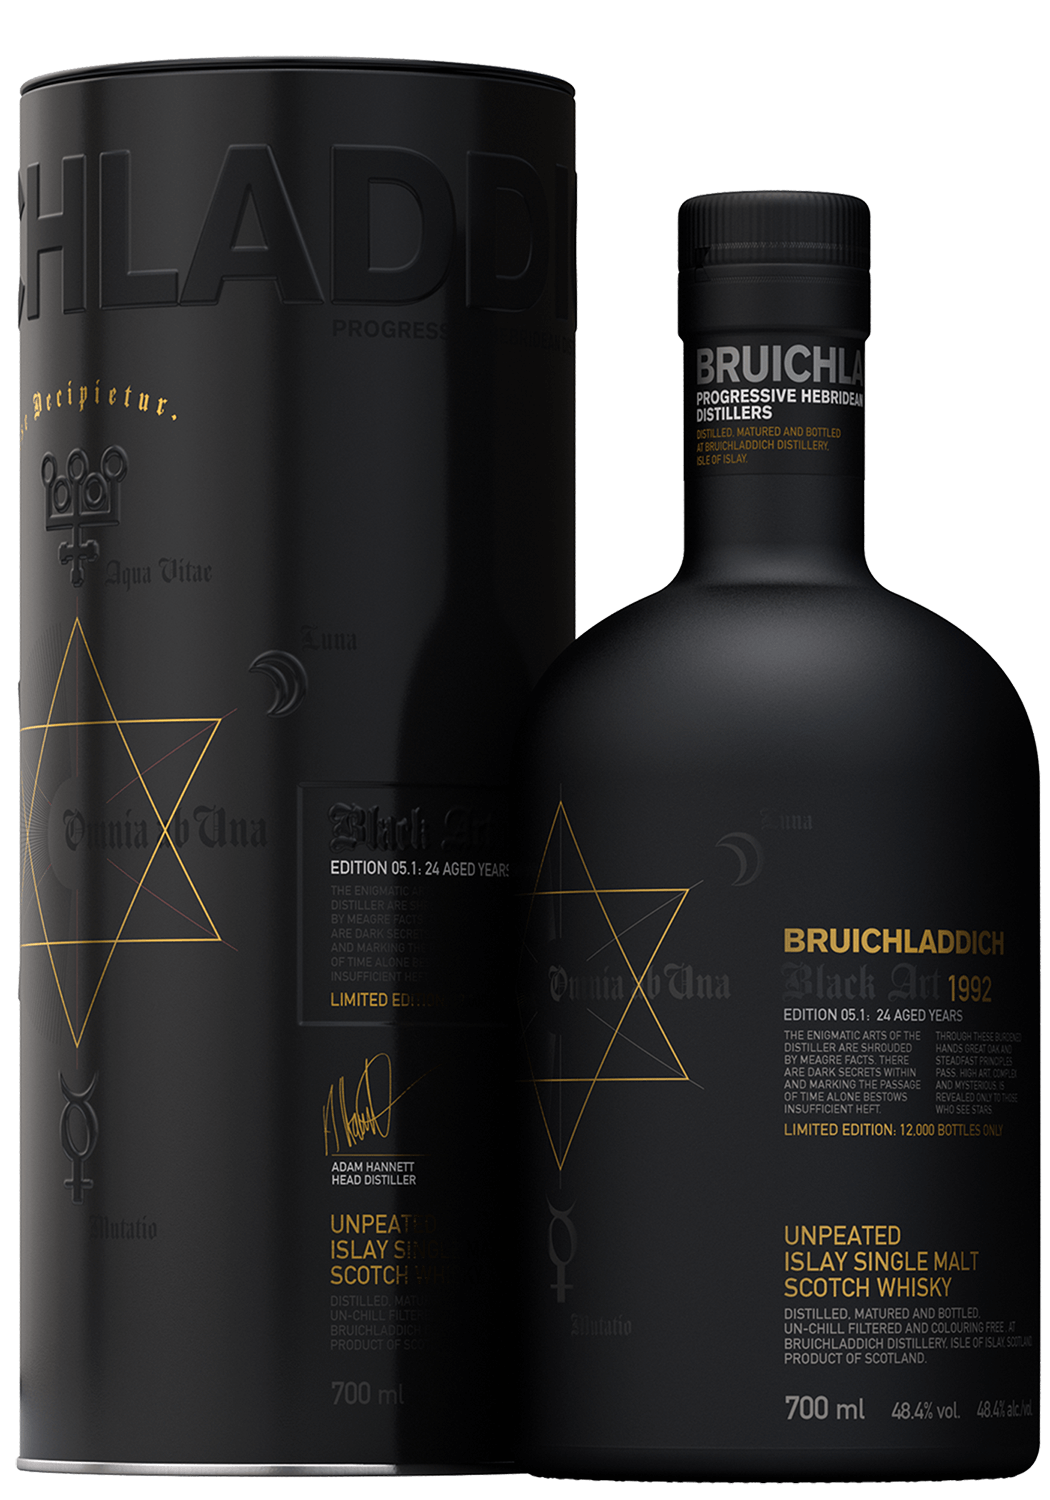 Bruichladdich Black Art Edition 05.1 24 aged years single malt scotch whisky (gift box) bruichladdich scottish barley single malt scoth whisky gift box